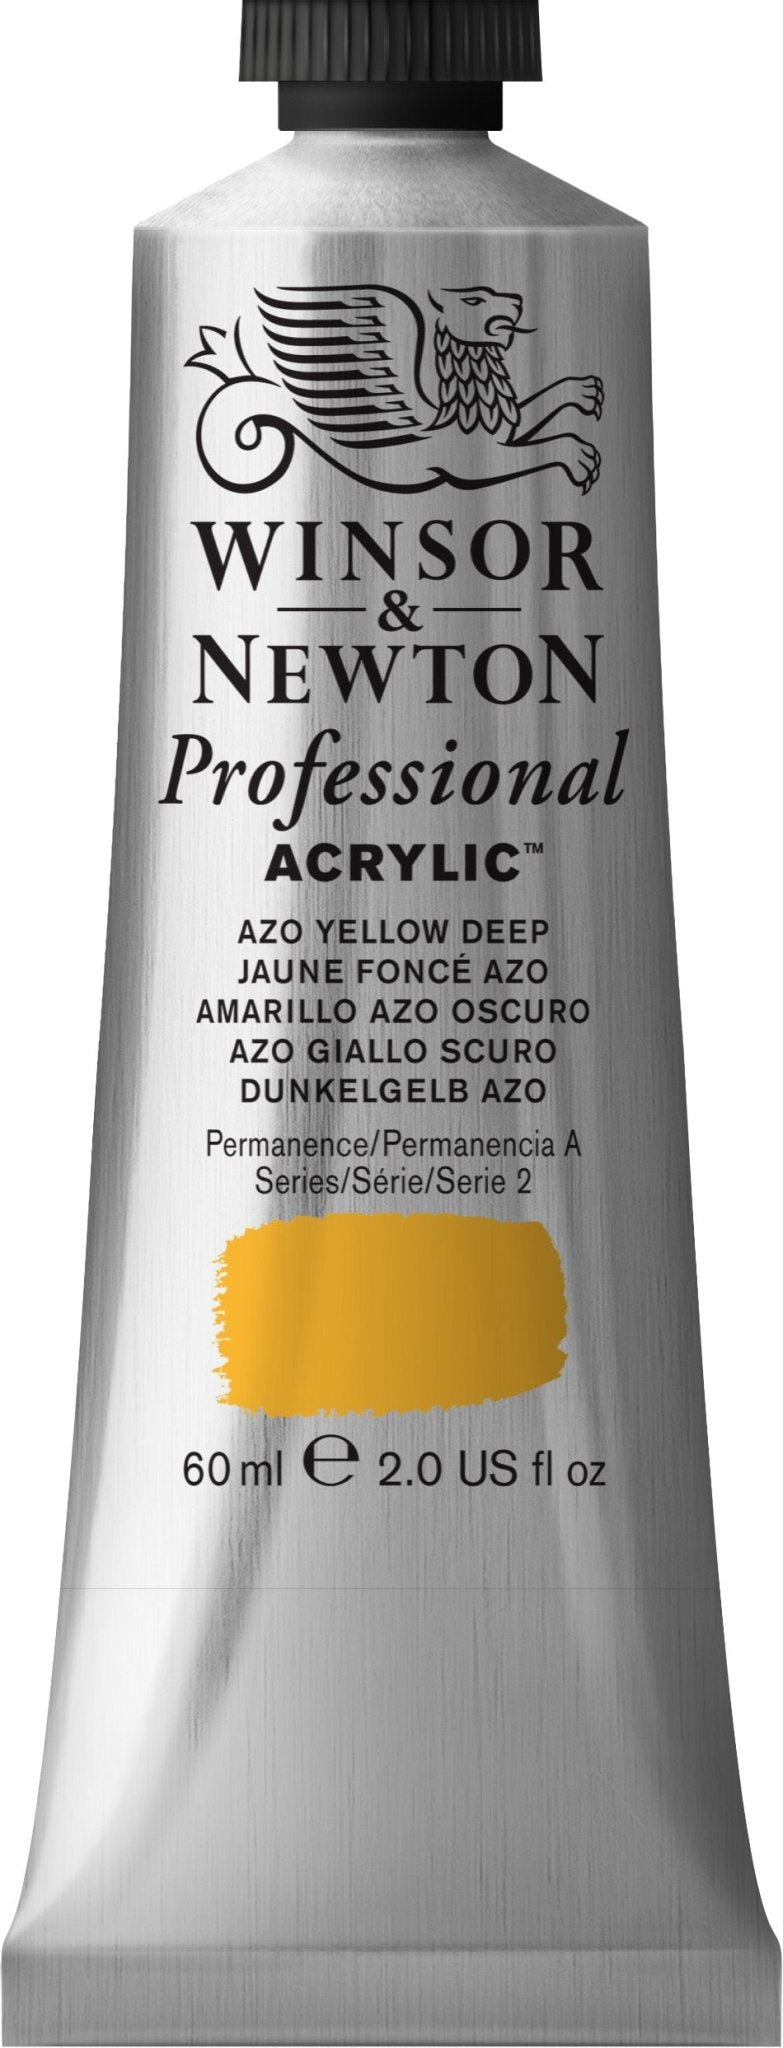 W & N Professional Acrylic 60ml Azo Yellow Deep - theartshop.com.au